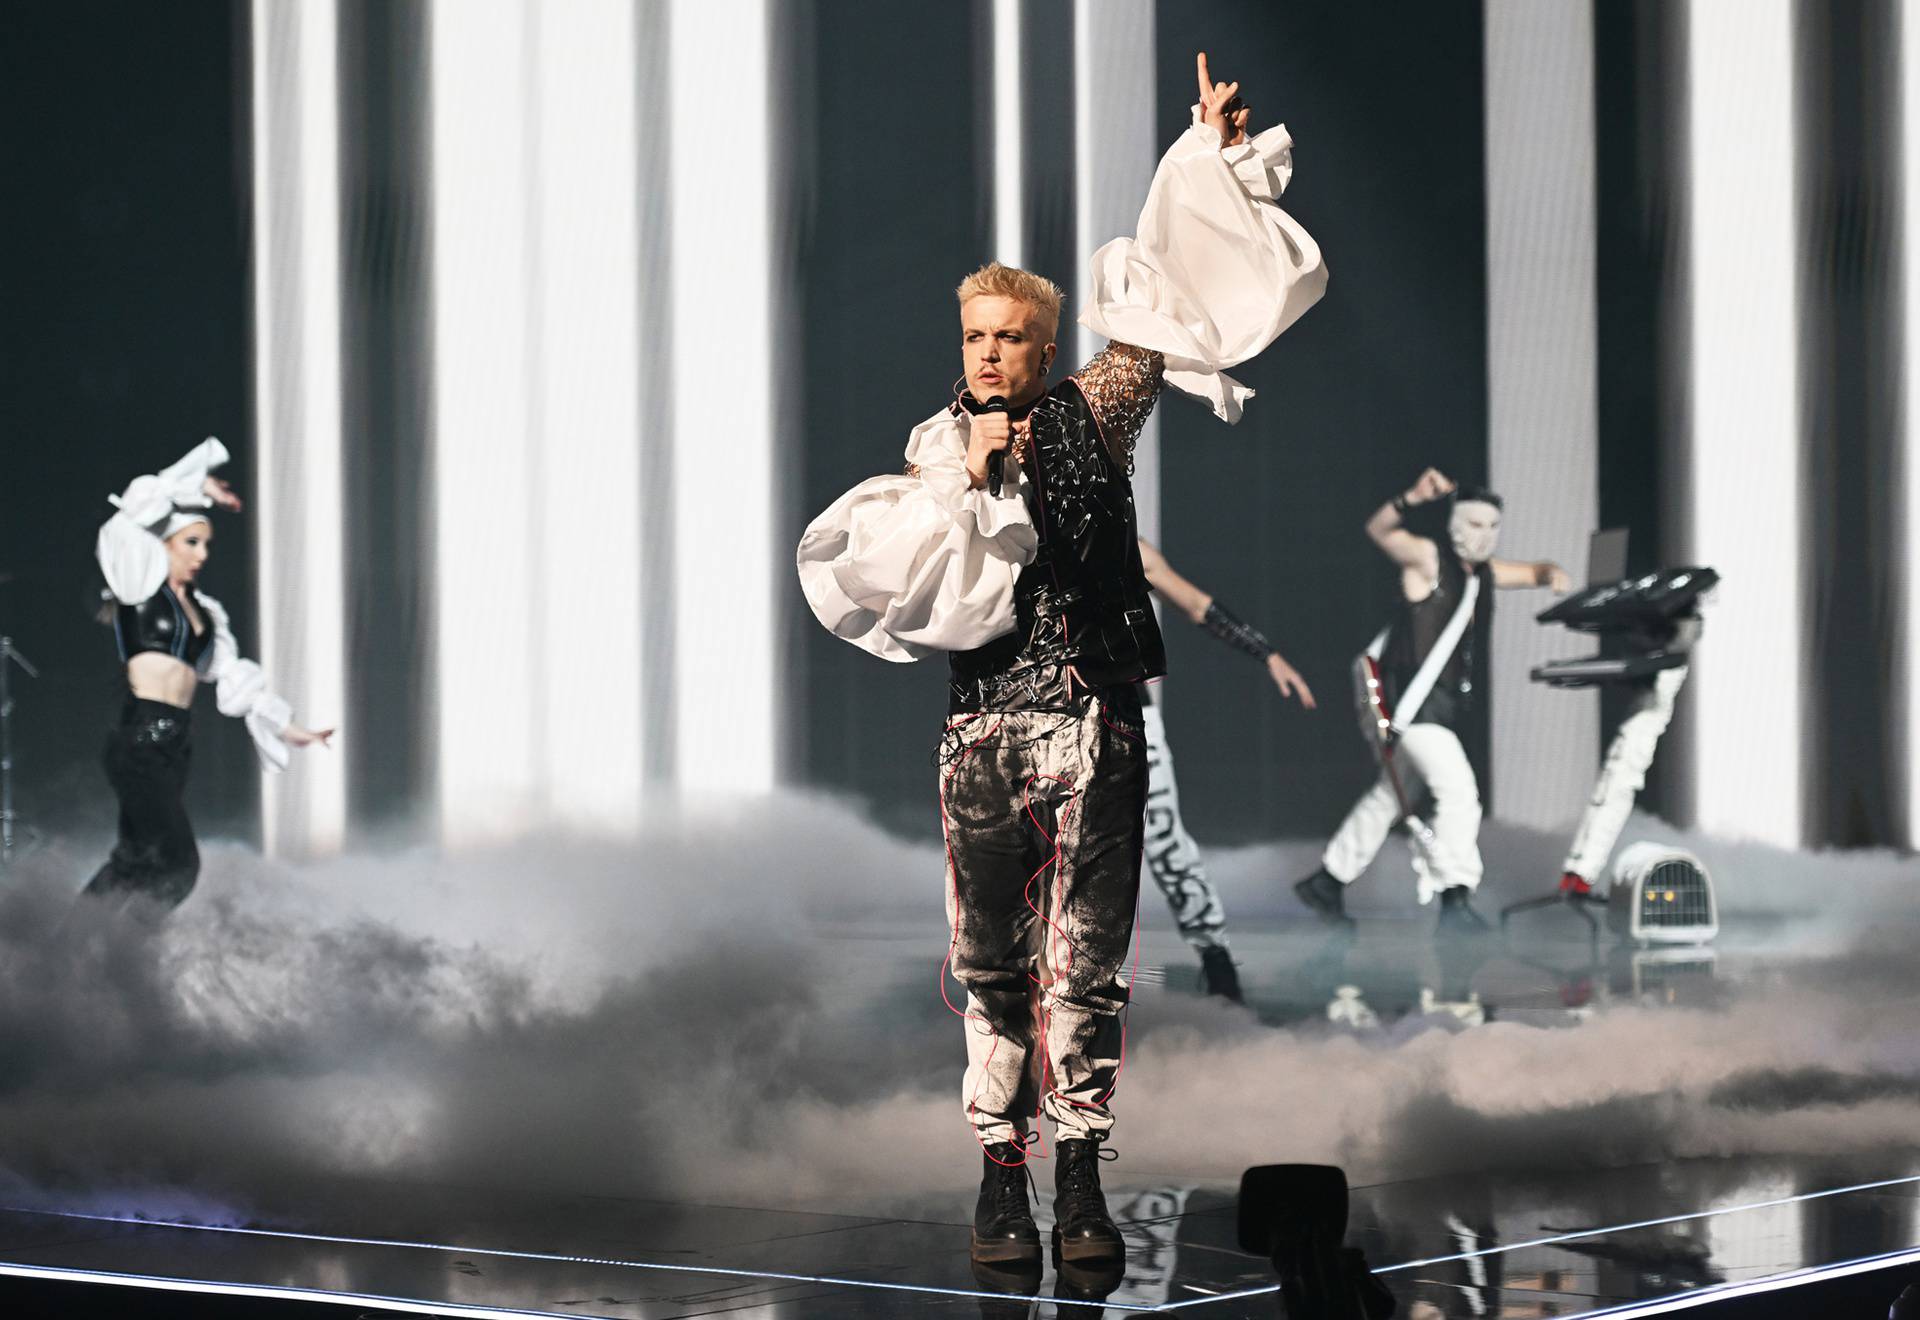 Lasagna diže prosjek! Hrvatska nakon njegove pobjede ima veće šanse da osvoji Eurosong